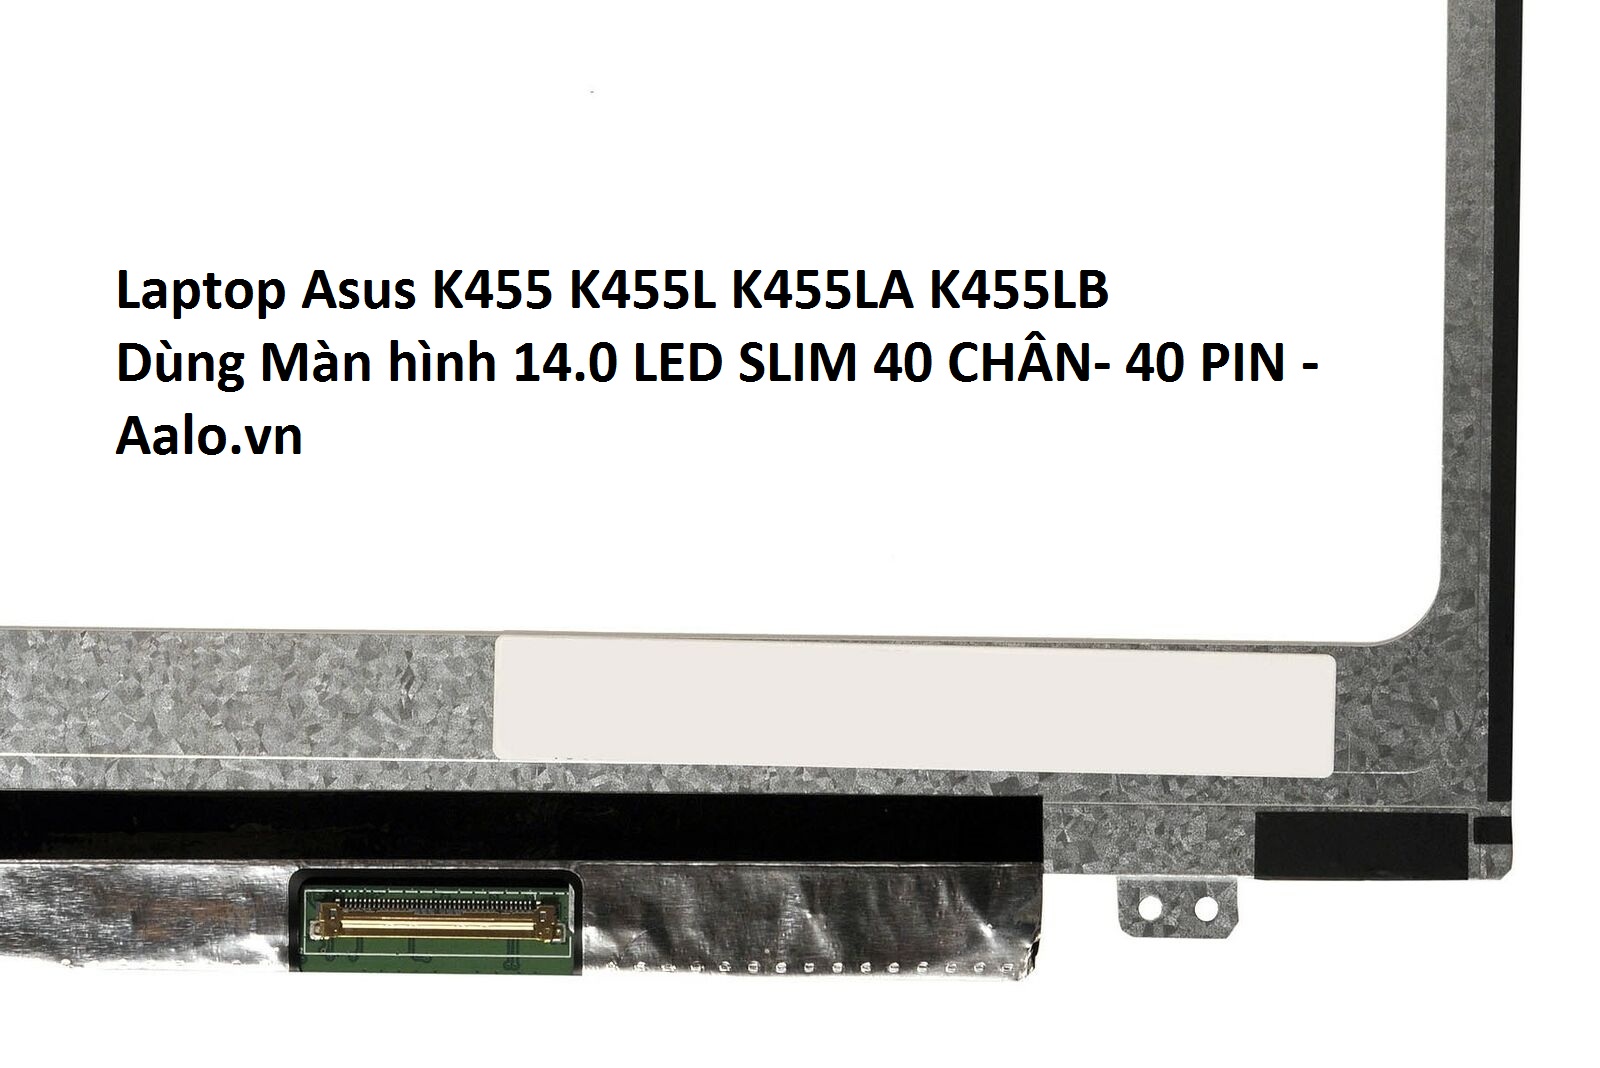 Màn hình Laptop Asus K455 K455L K455LA K455LB - Aalo.vn